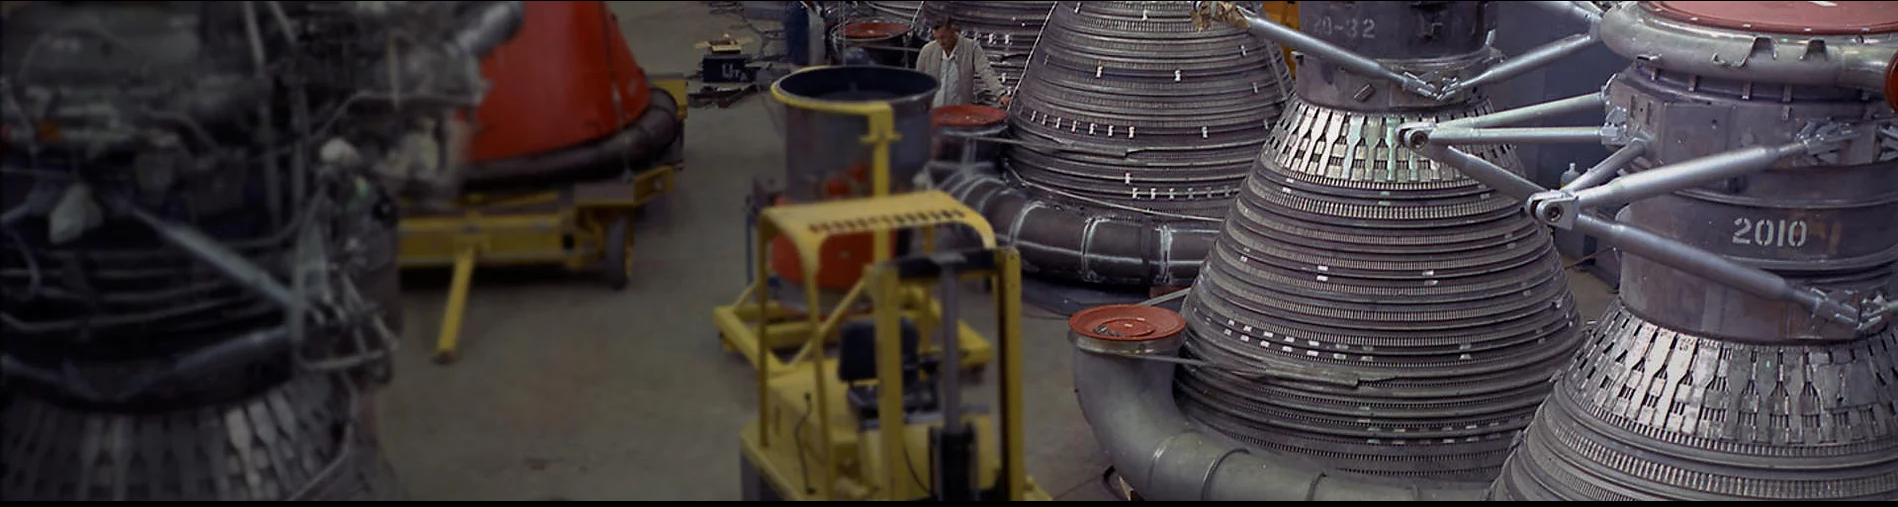 إعادة تشغيل محرك F-1 Apollo مع حلول المسح الجيوميكانيكي 3D